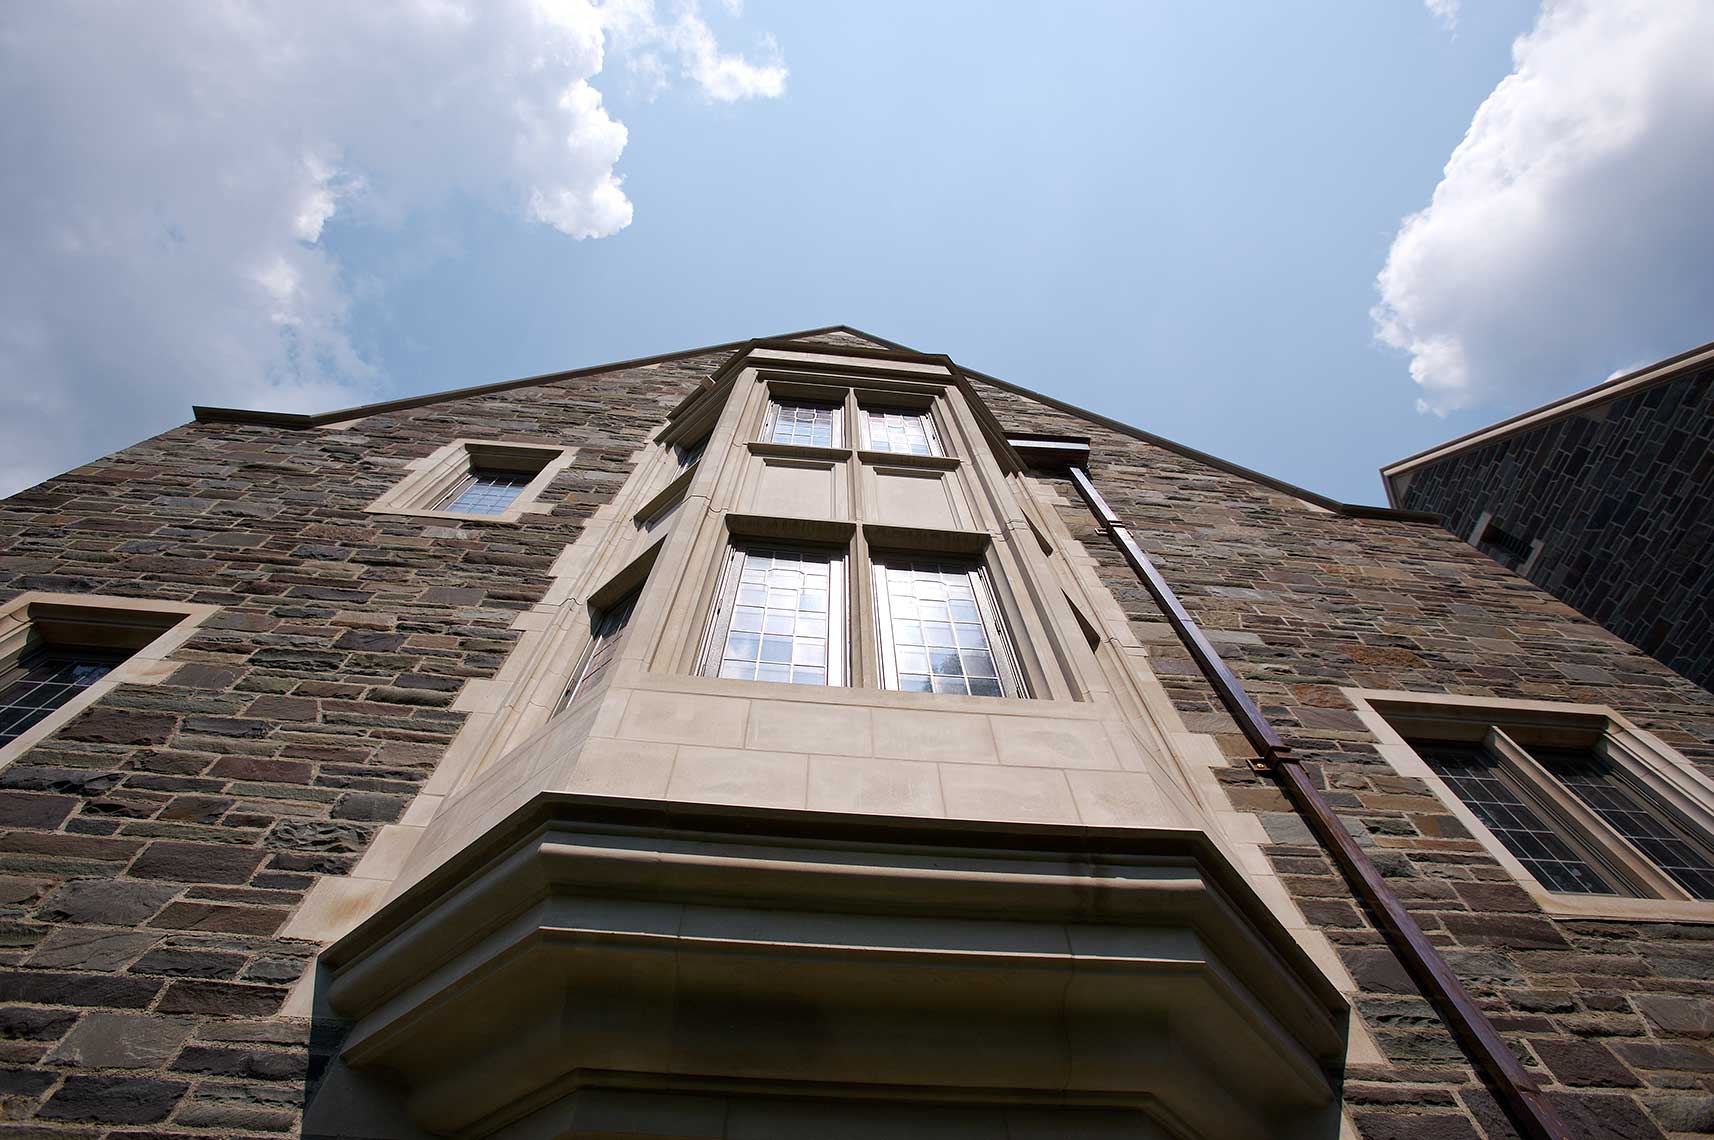 Whitman College, Princeton University - Window Bays Exterior